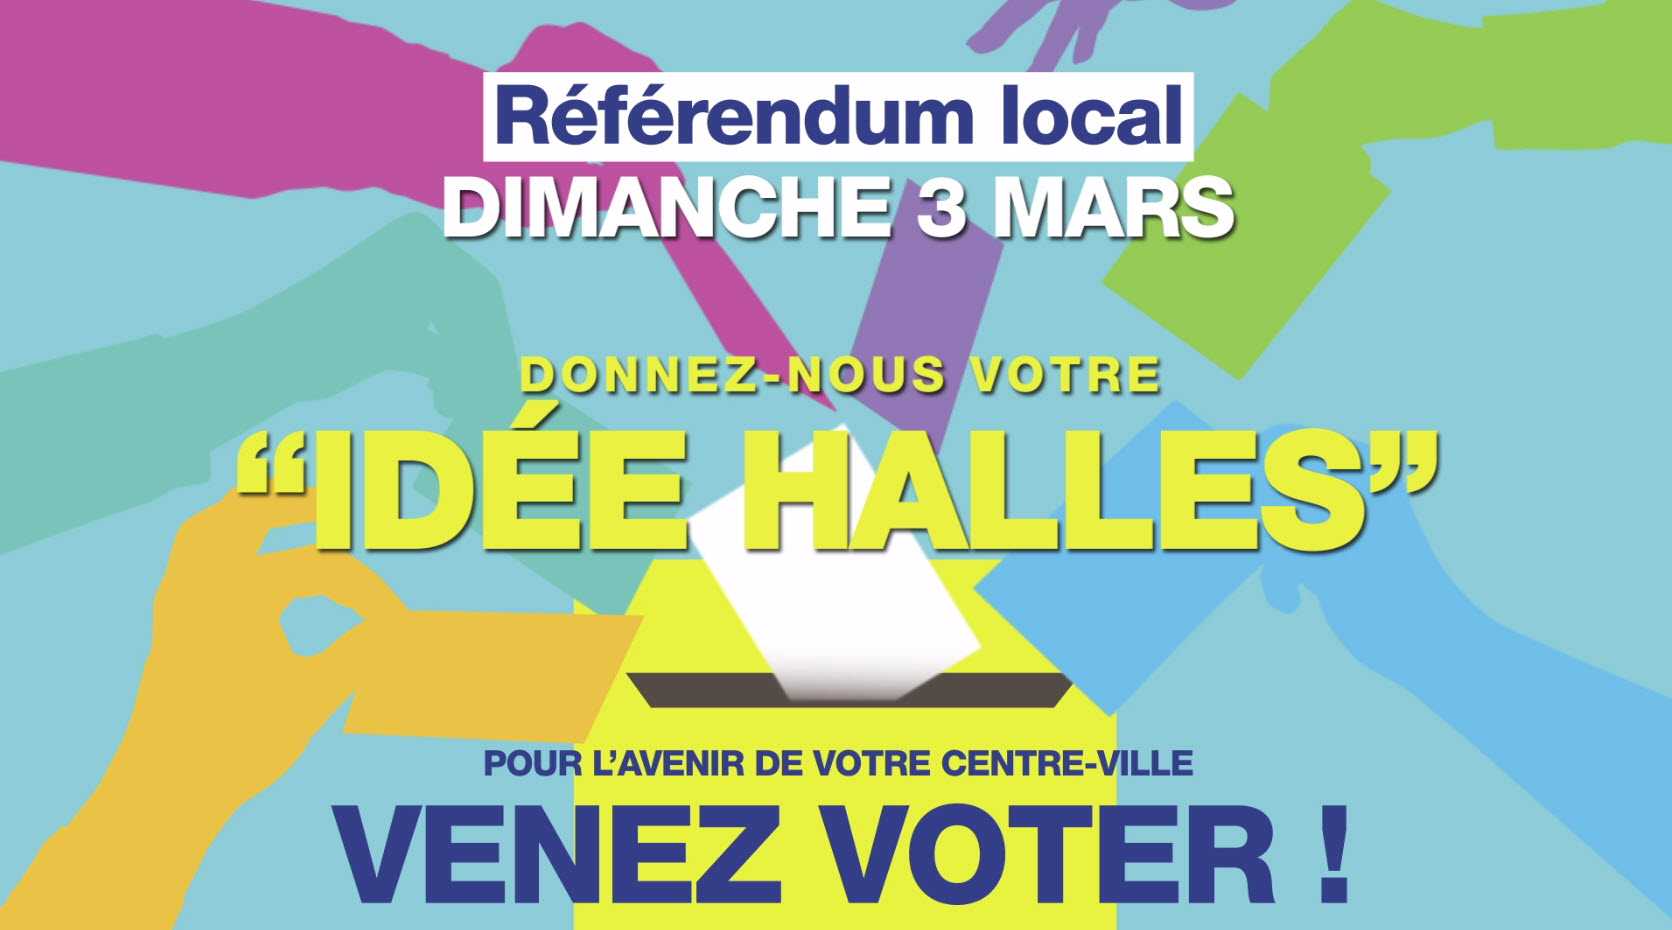 Référendum local le 3 mars : donnez-nous votre idée-halles !